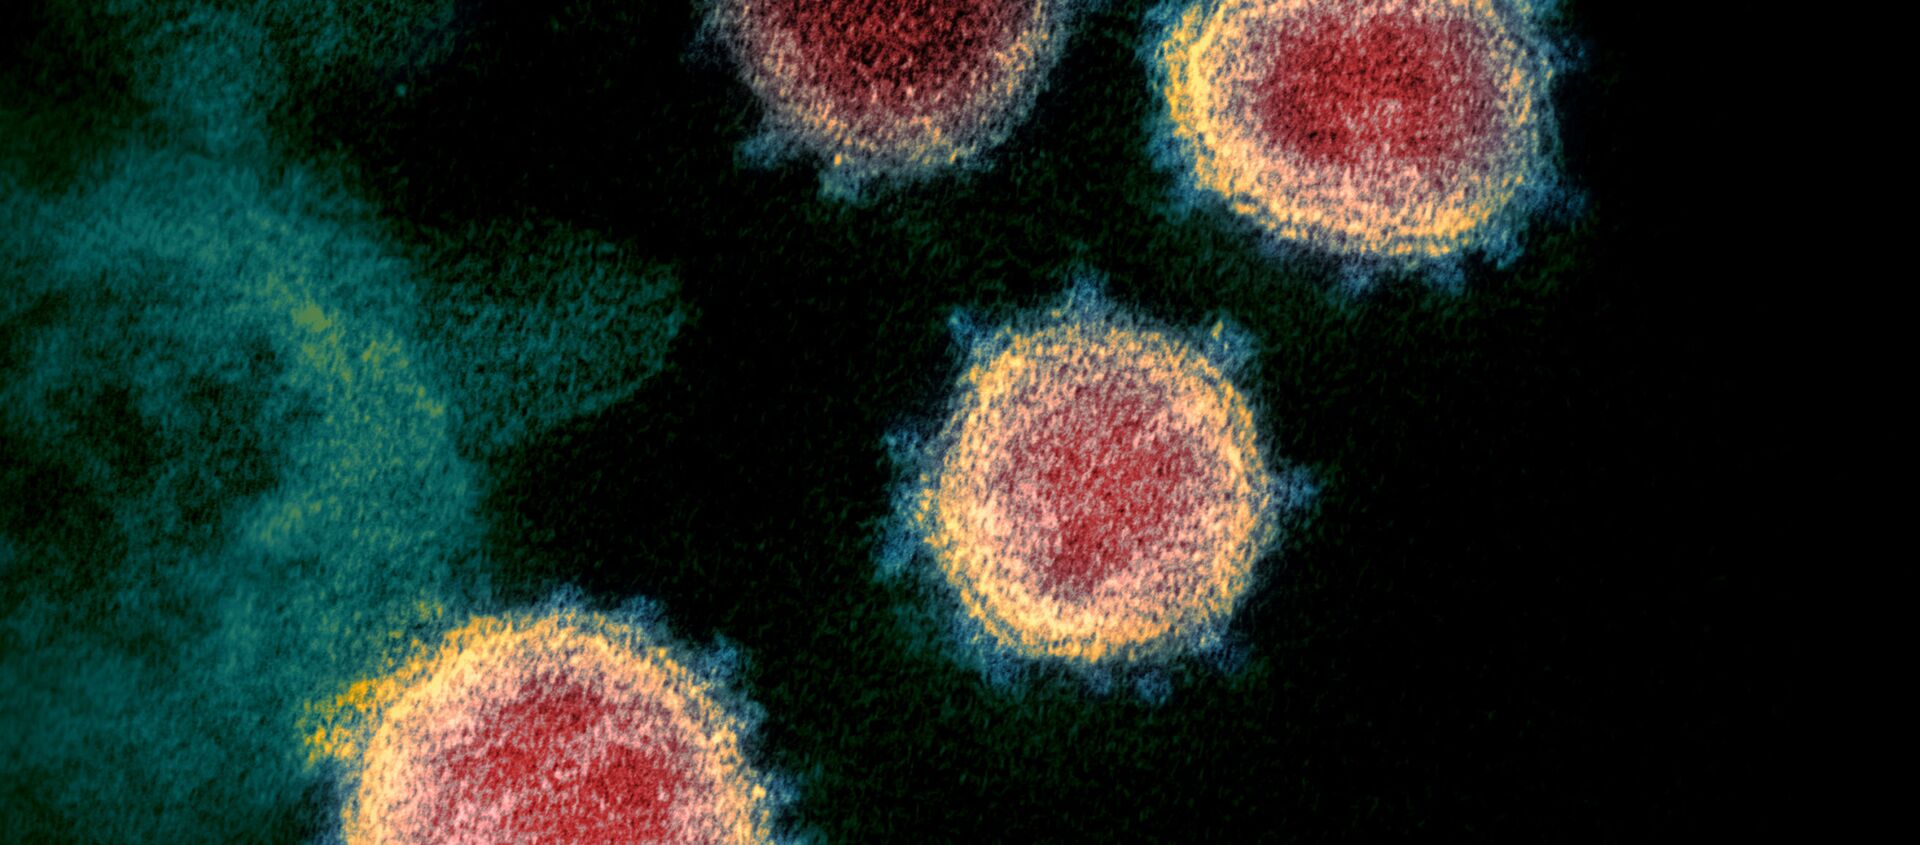 تُظهر صورة المجهر الإلكتروني لفيروس SARS-CoV-2، والمعروف أيضًا باسم الفيروس التاجي الجديد كورونا، الذي يسبب مرض فيروسي COVID-19، المعزول من مريض في الولايات المتحدة. وتظهر على الخلايا نتوءات صغيرة خارج سطح الخلايا فتبدو كتاج. - سبوتنيك عربي, 1920, 22.06.2021